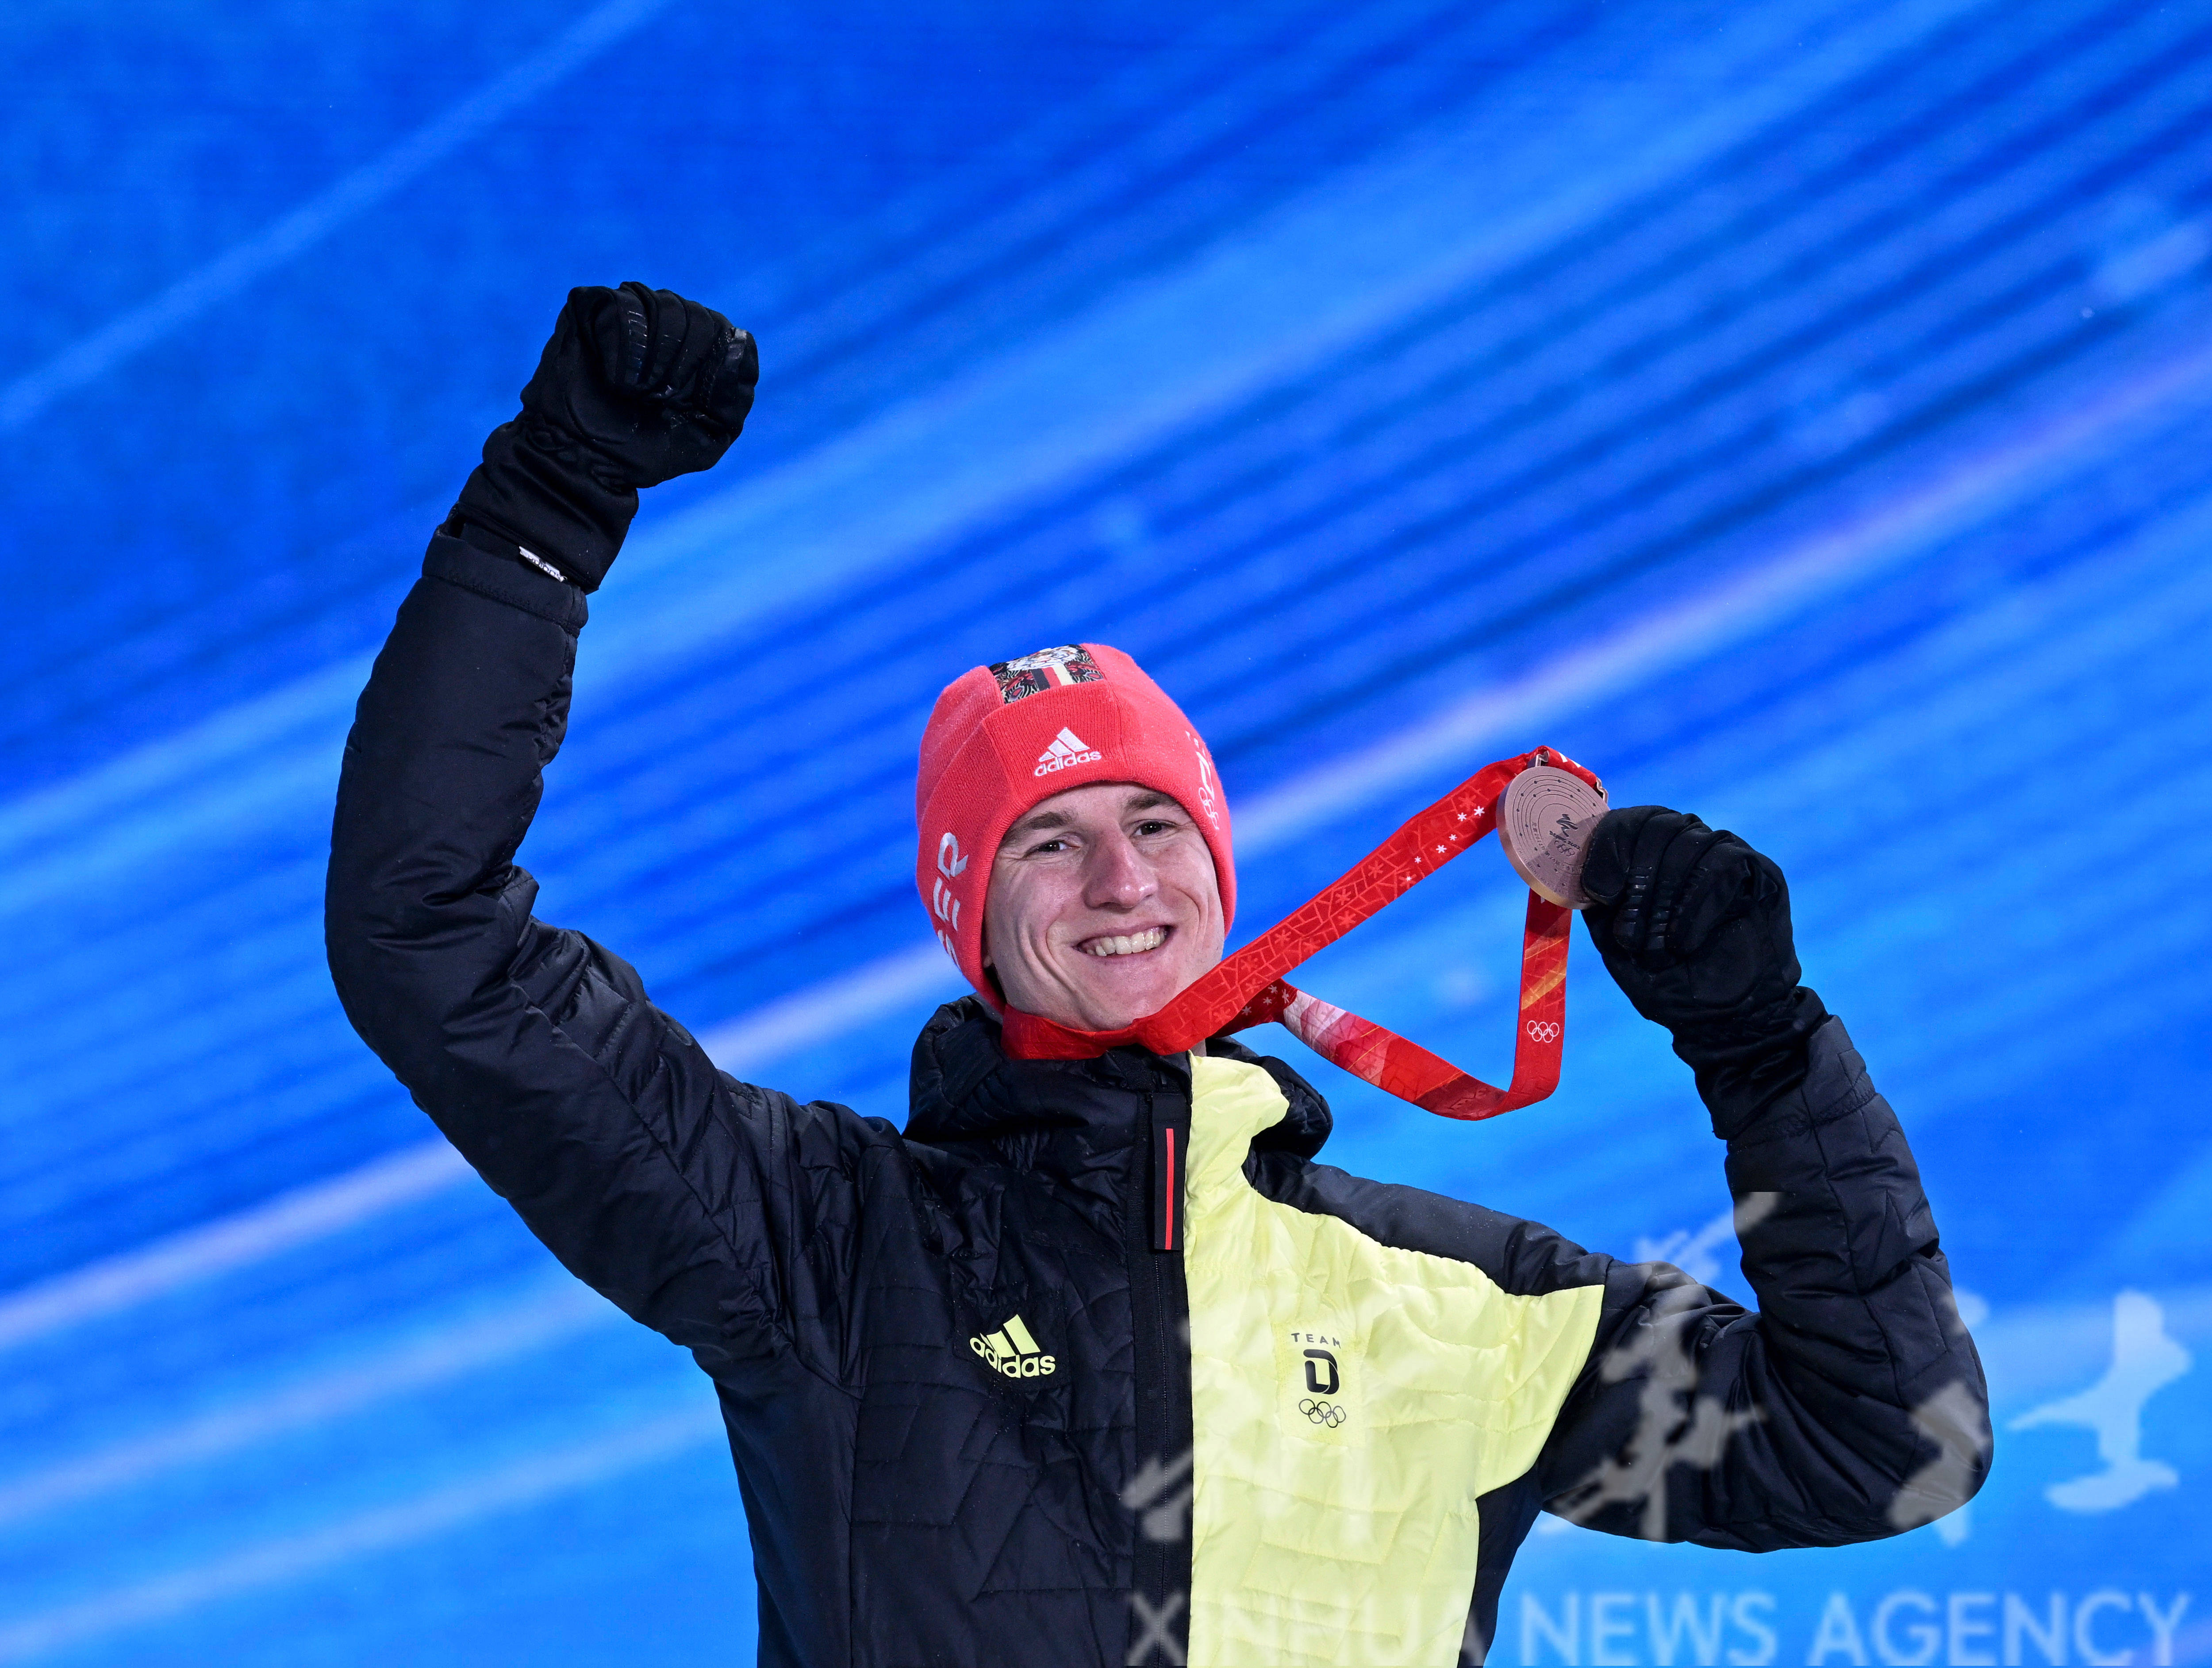 2月13日,冠军挪威选手马里乌斯·林德维克(前)在奖牌颁发仪式上